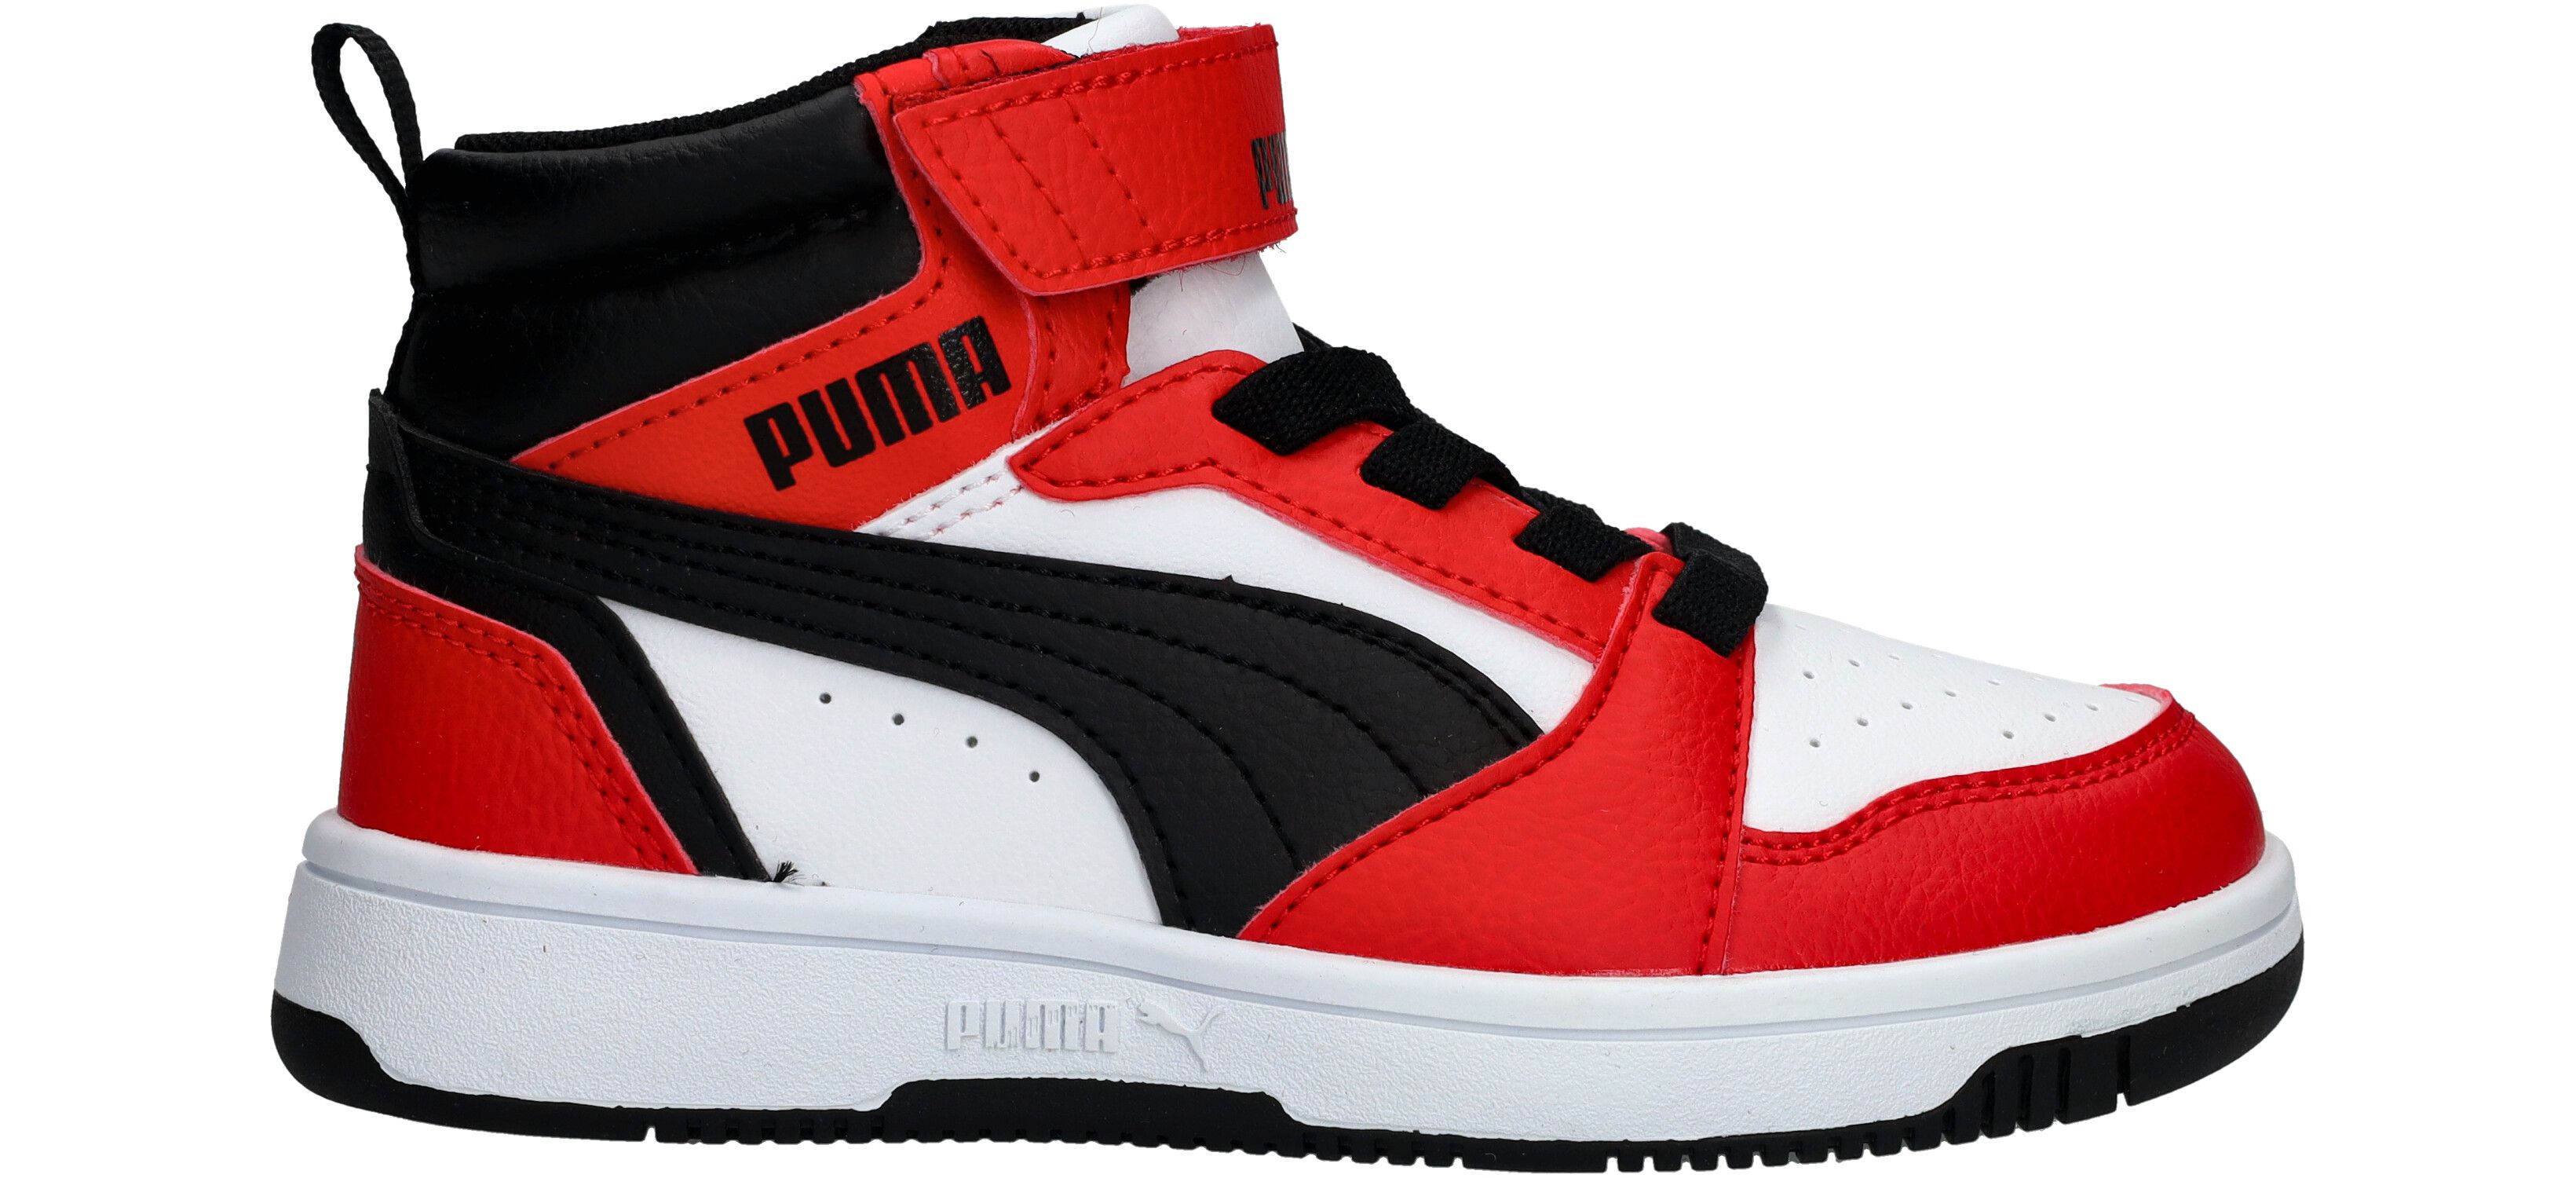 Puma Rebound V6 Mid jongens sneakers rood/zwart - Maat 29 - Uitneembare zool